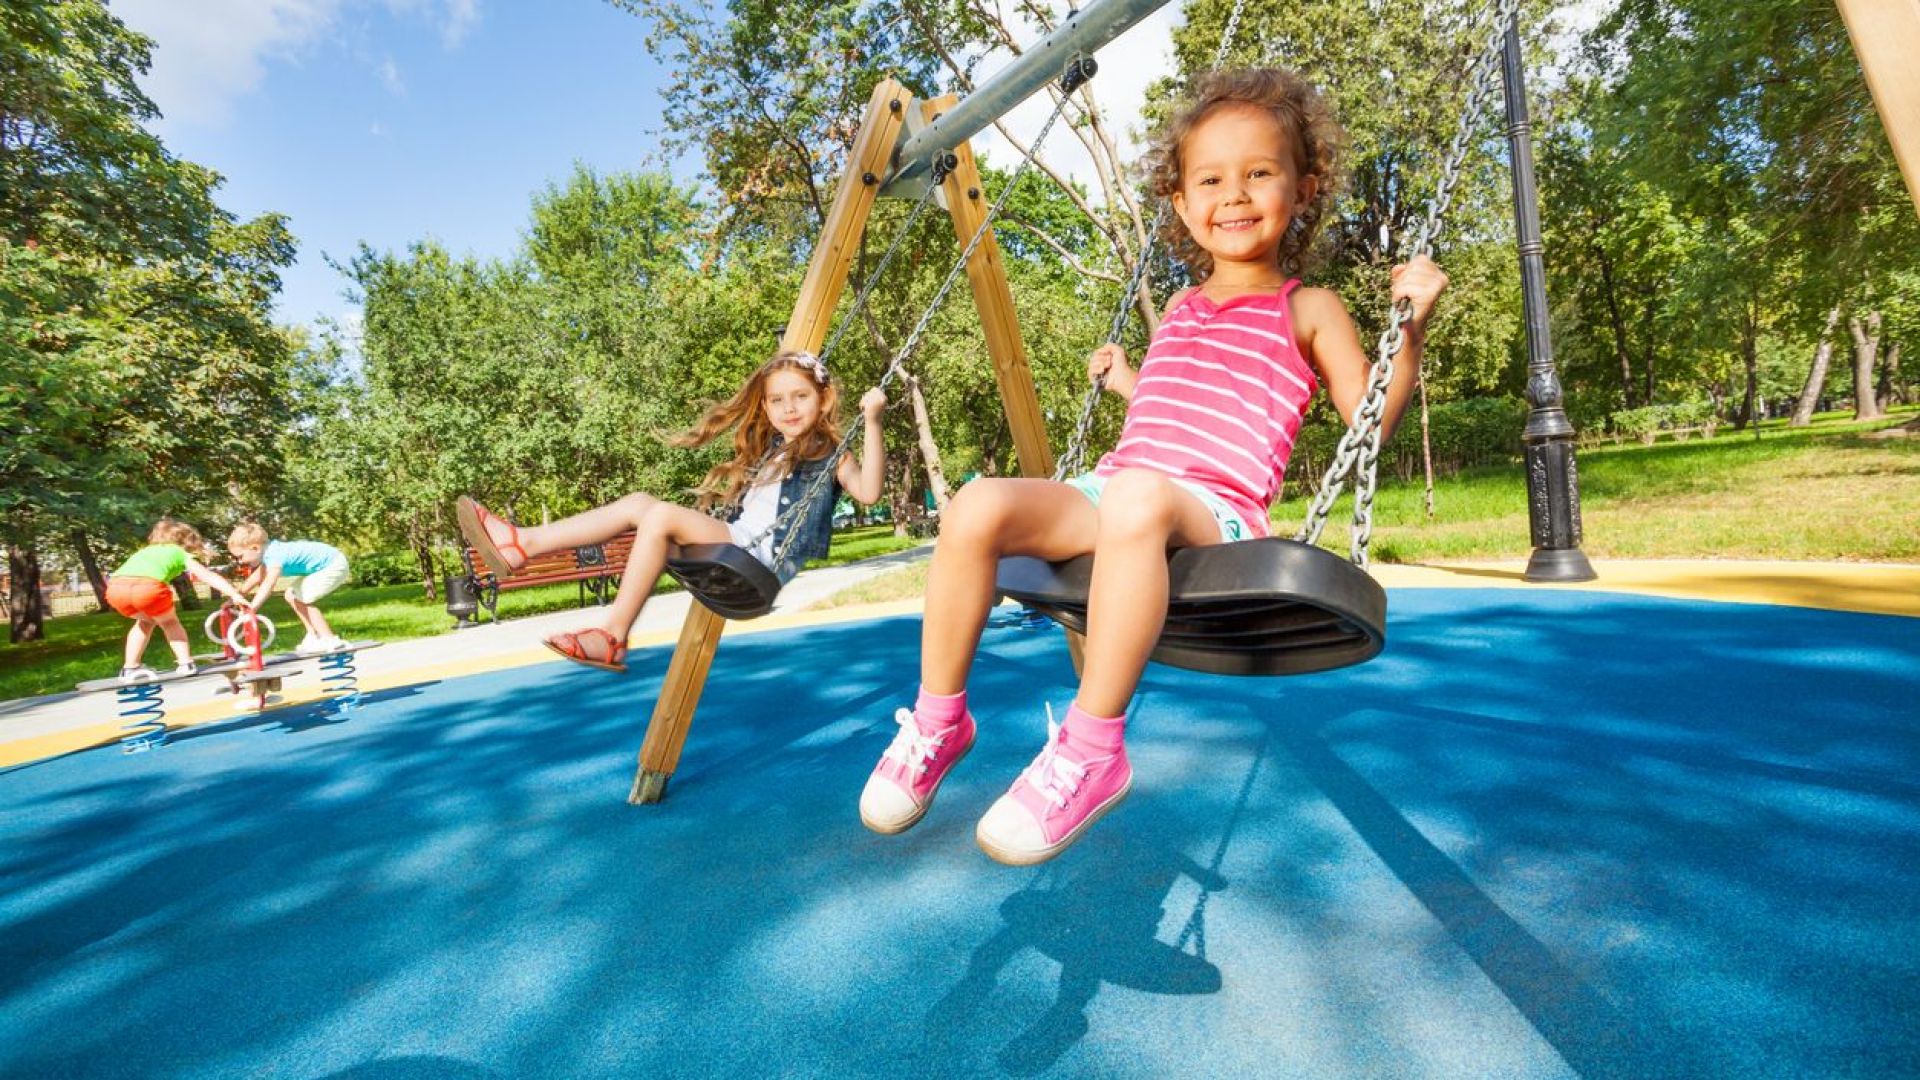 Гуменото покритие на детските площадки често е с високо съдържание на олово